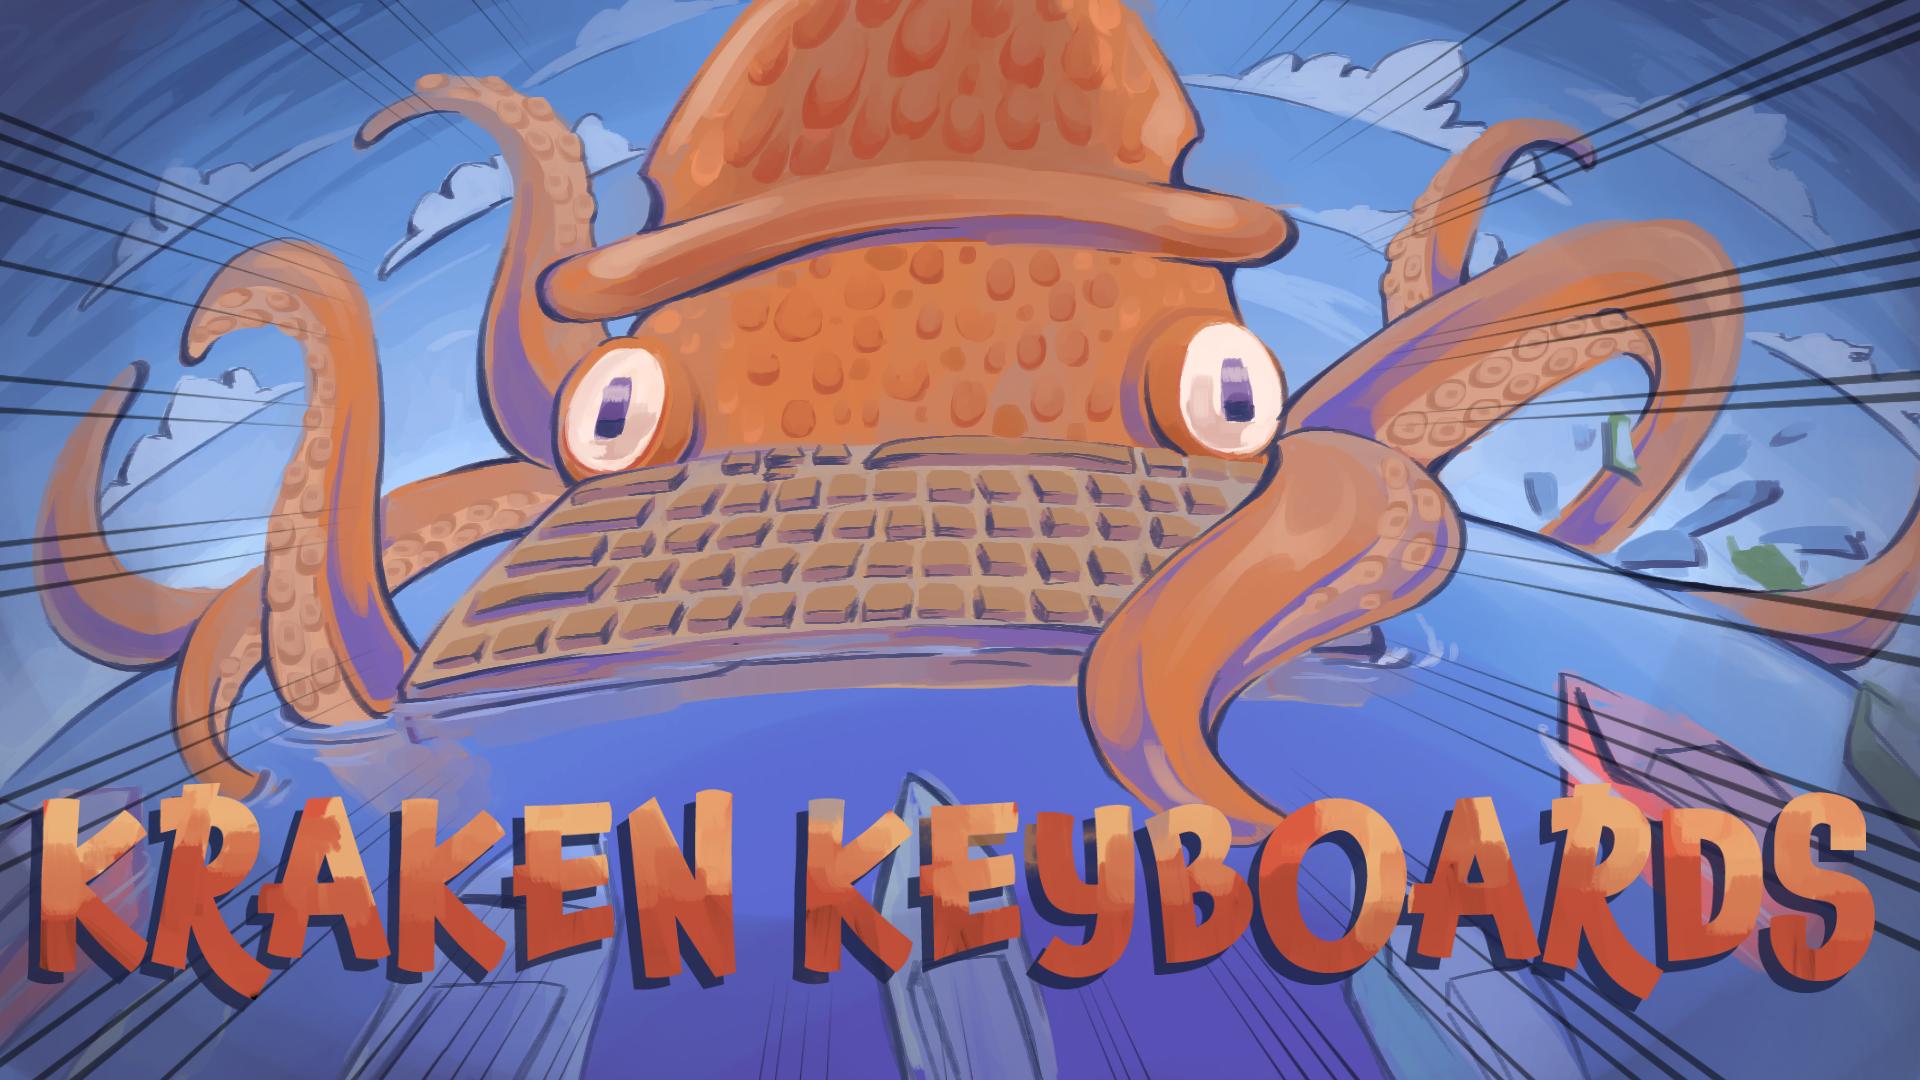 Kraken Keyboards